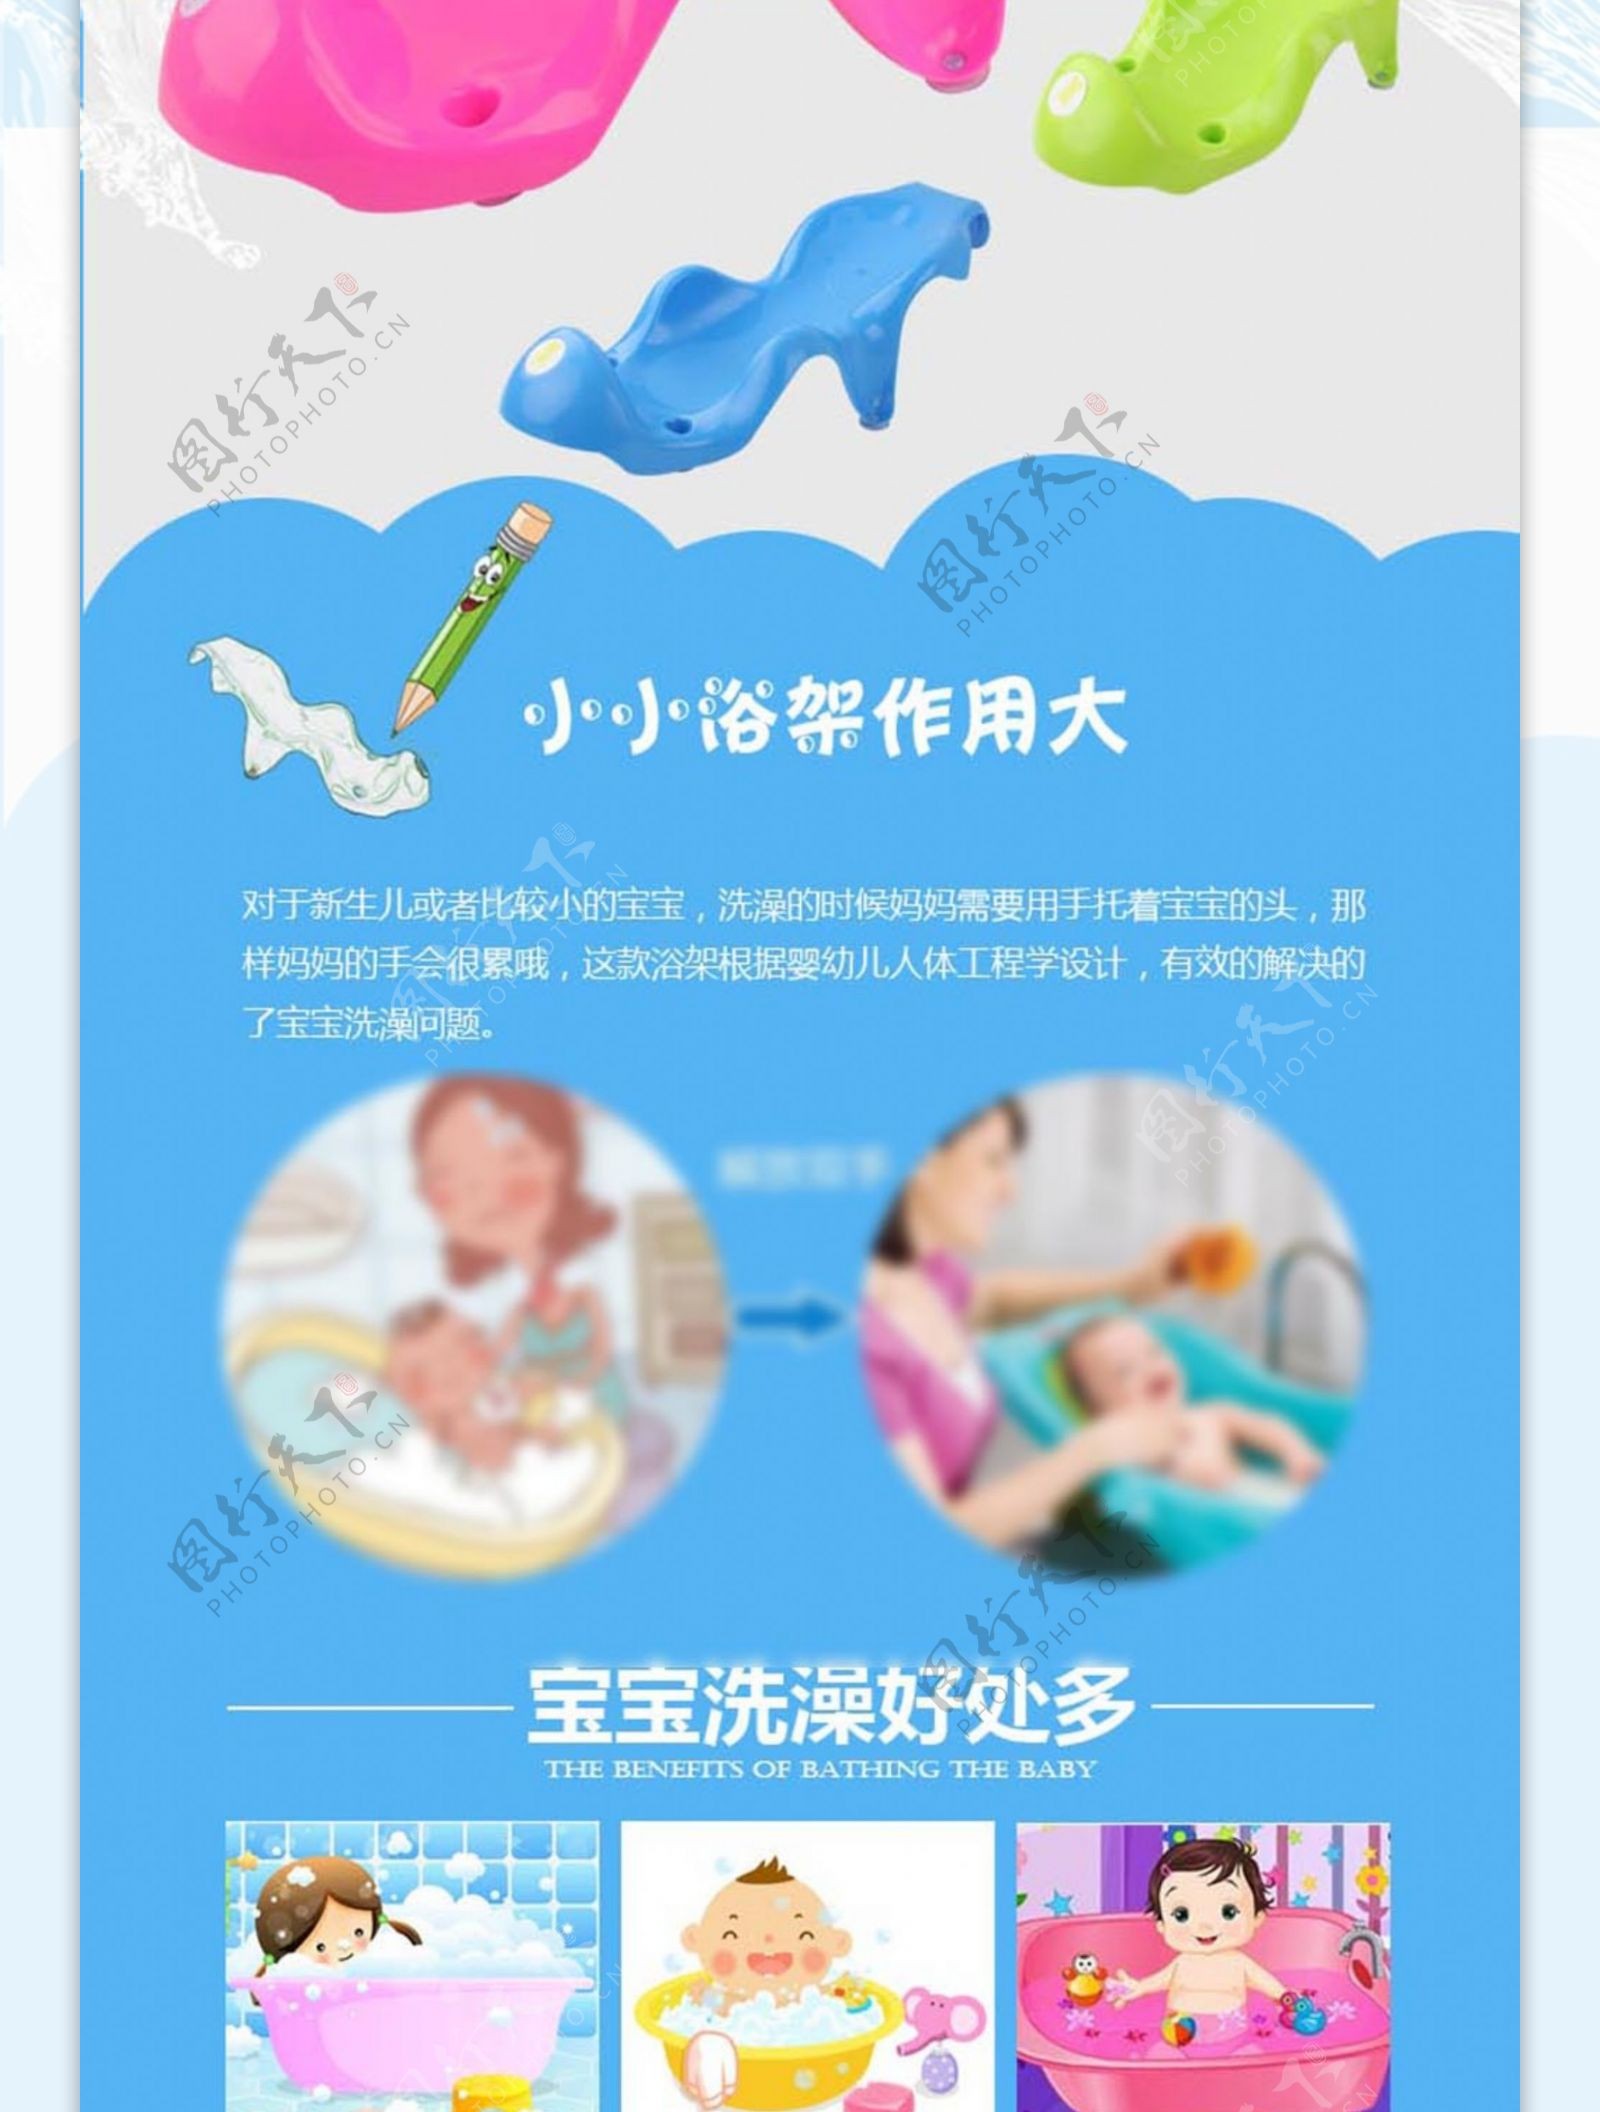 母婴用品儿童浴架详情页设计图片